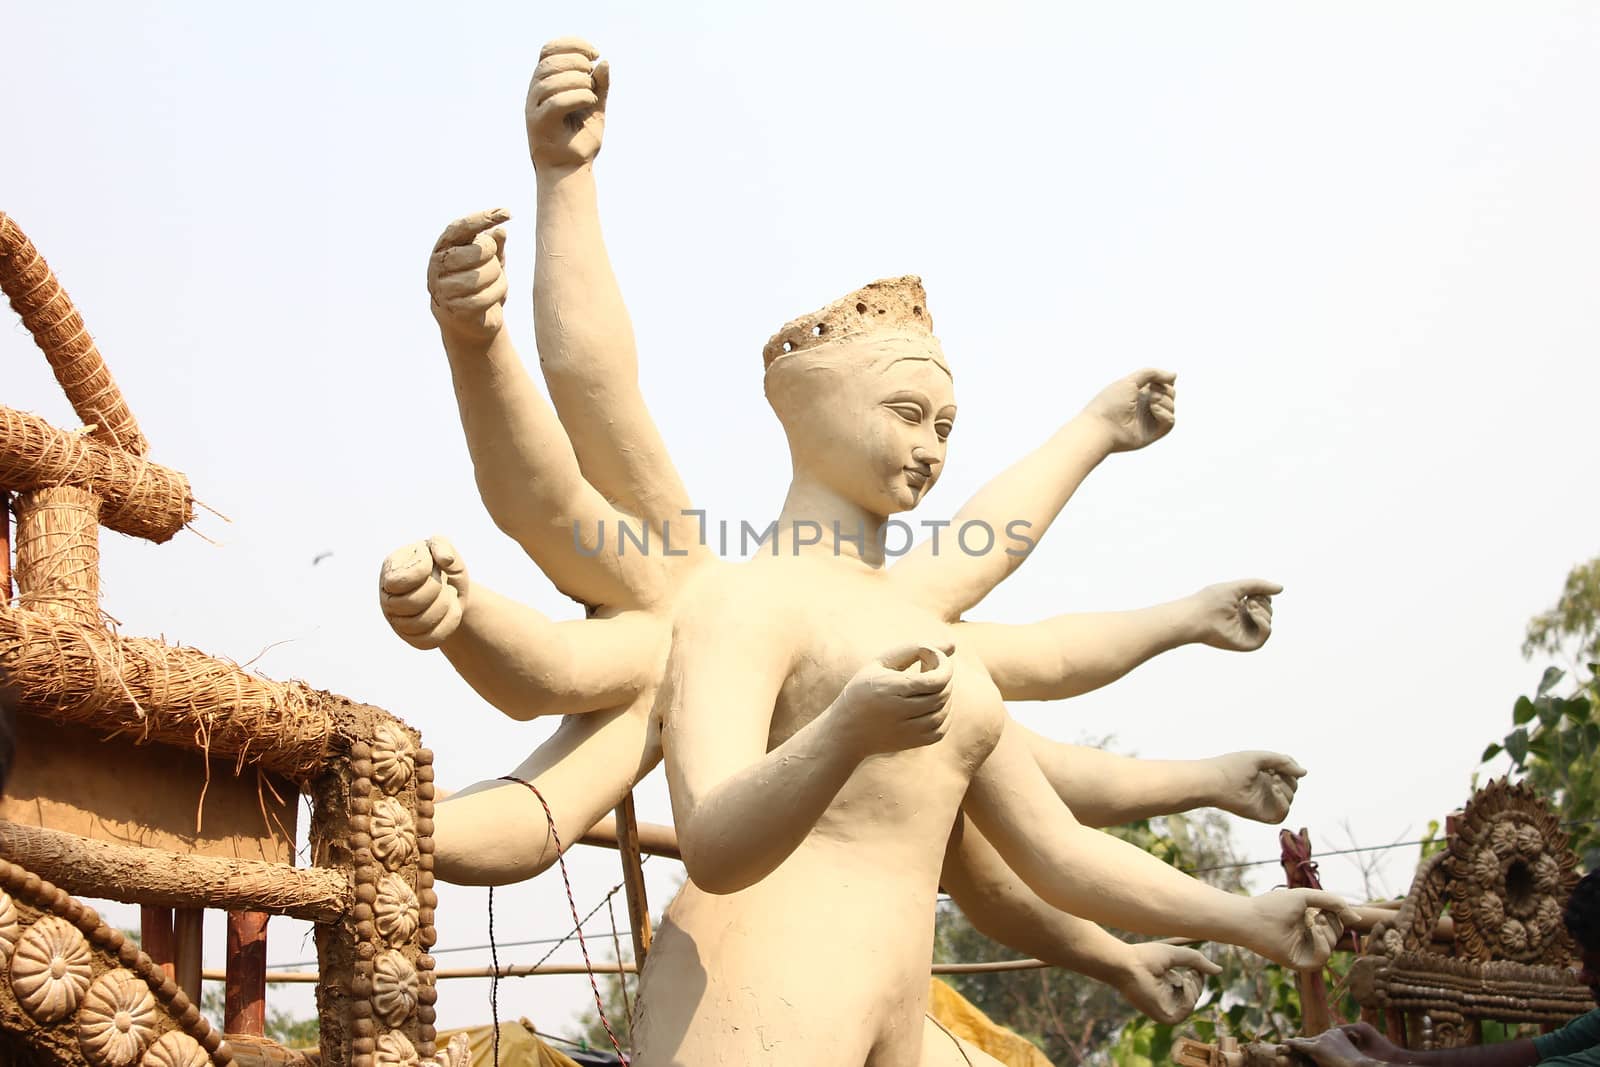 incomplete durga sculpture